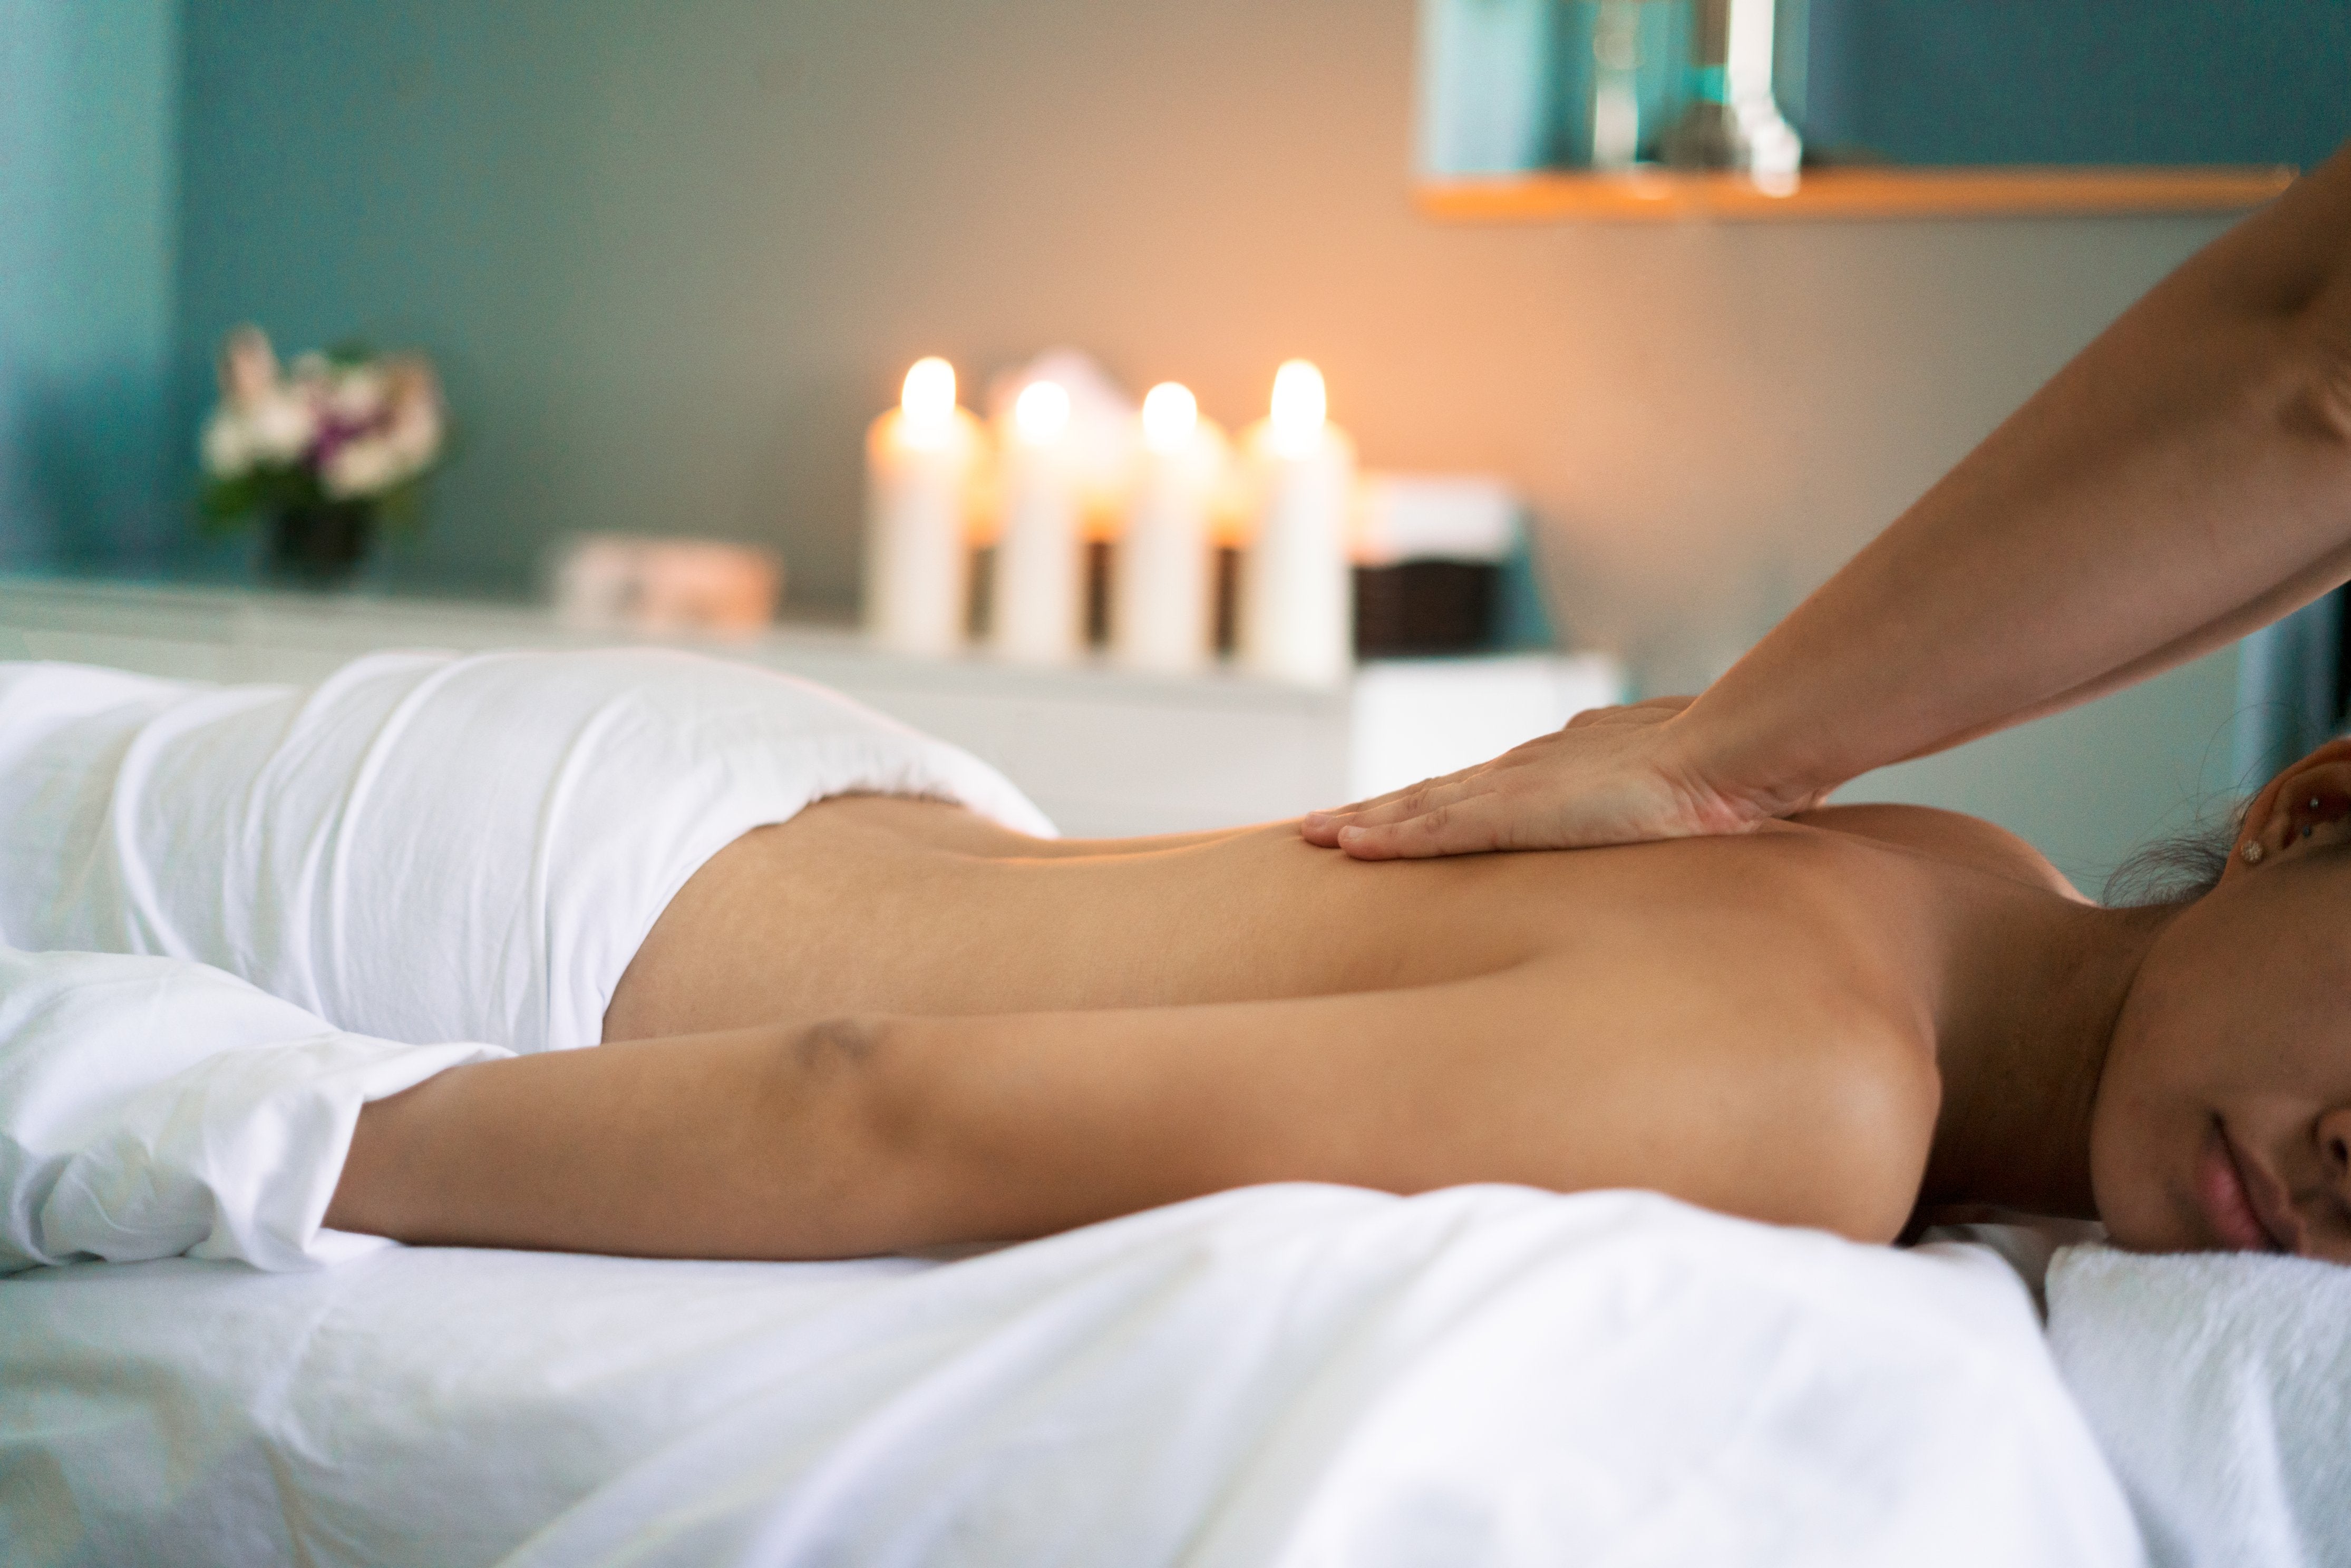 Hot massage video. Массаж спины. Релакс массаж. Красивый массаж тела. Релаксирующий массаж.